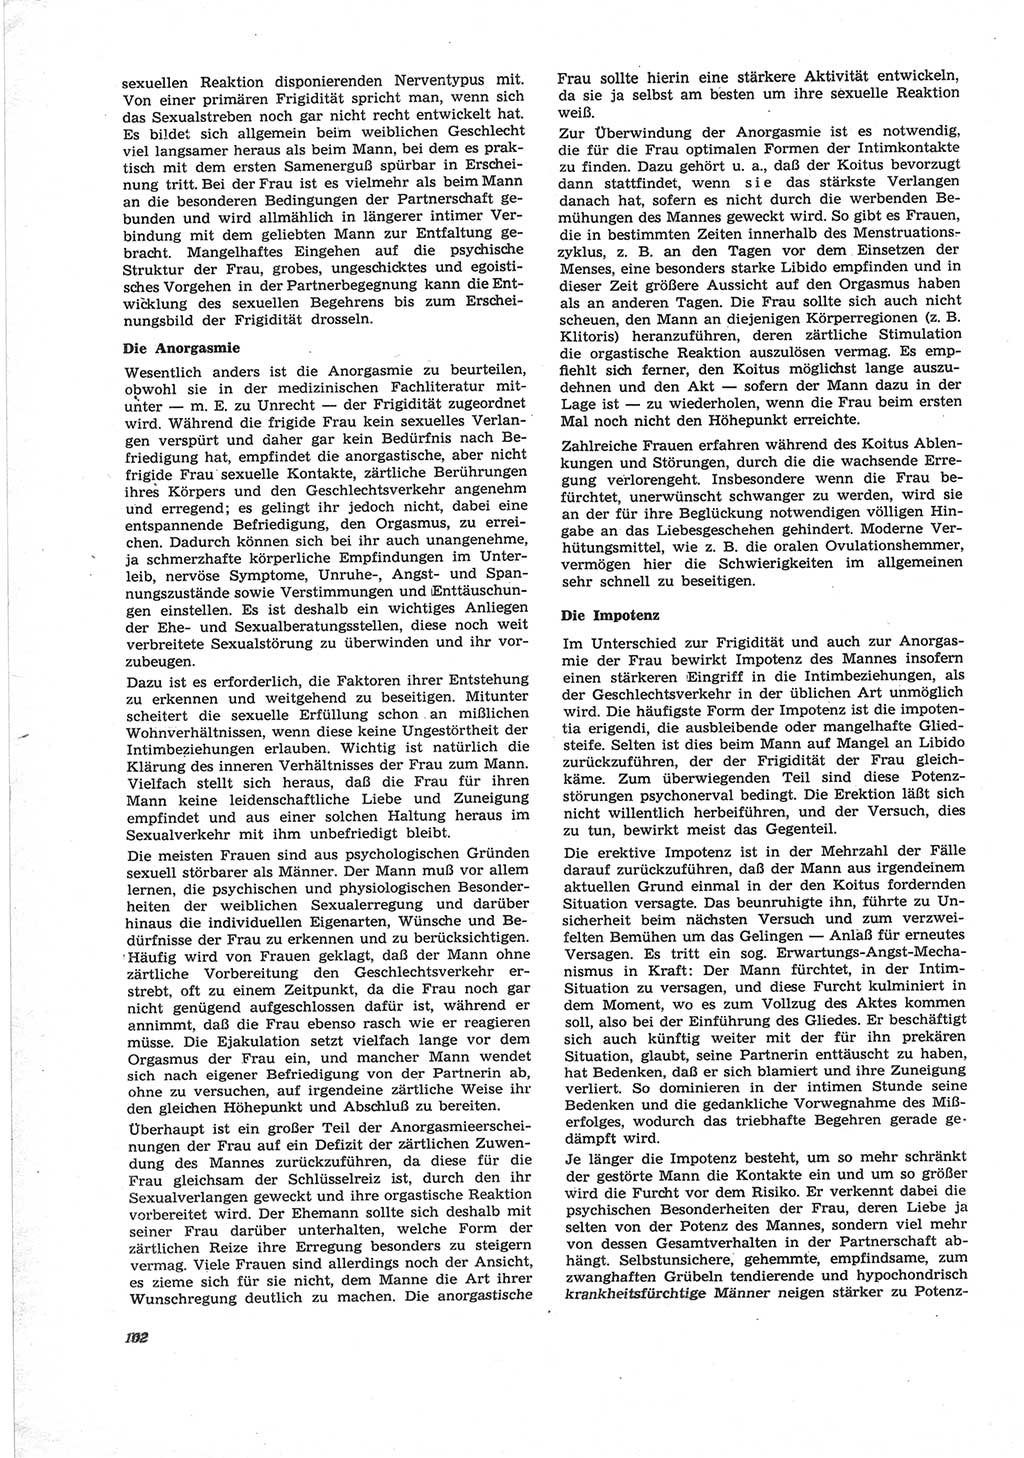 Neue Justiz (NJ), Zeitschrift für Recht und Rechtswissenschaft [Deutsche Demokratische Republik (DDR)], 25. Jahrgang 1971, Seite 102 (NJ DDR 1971, S. 102)